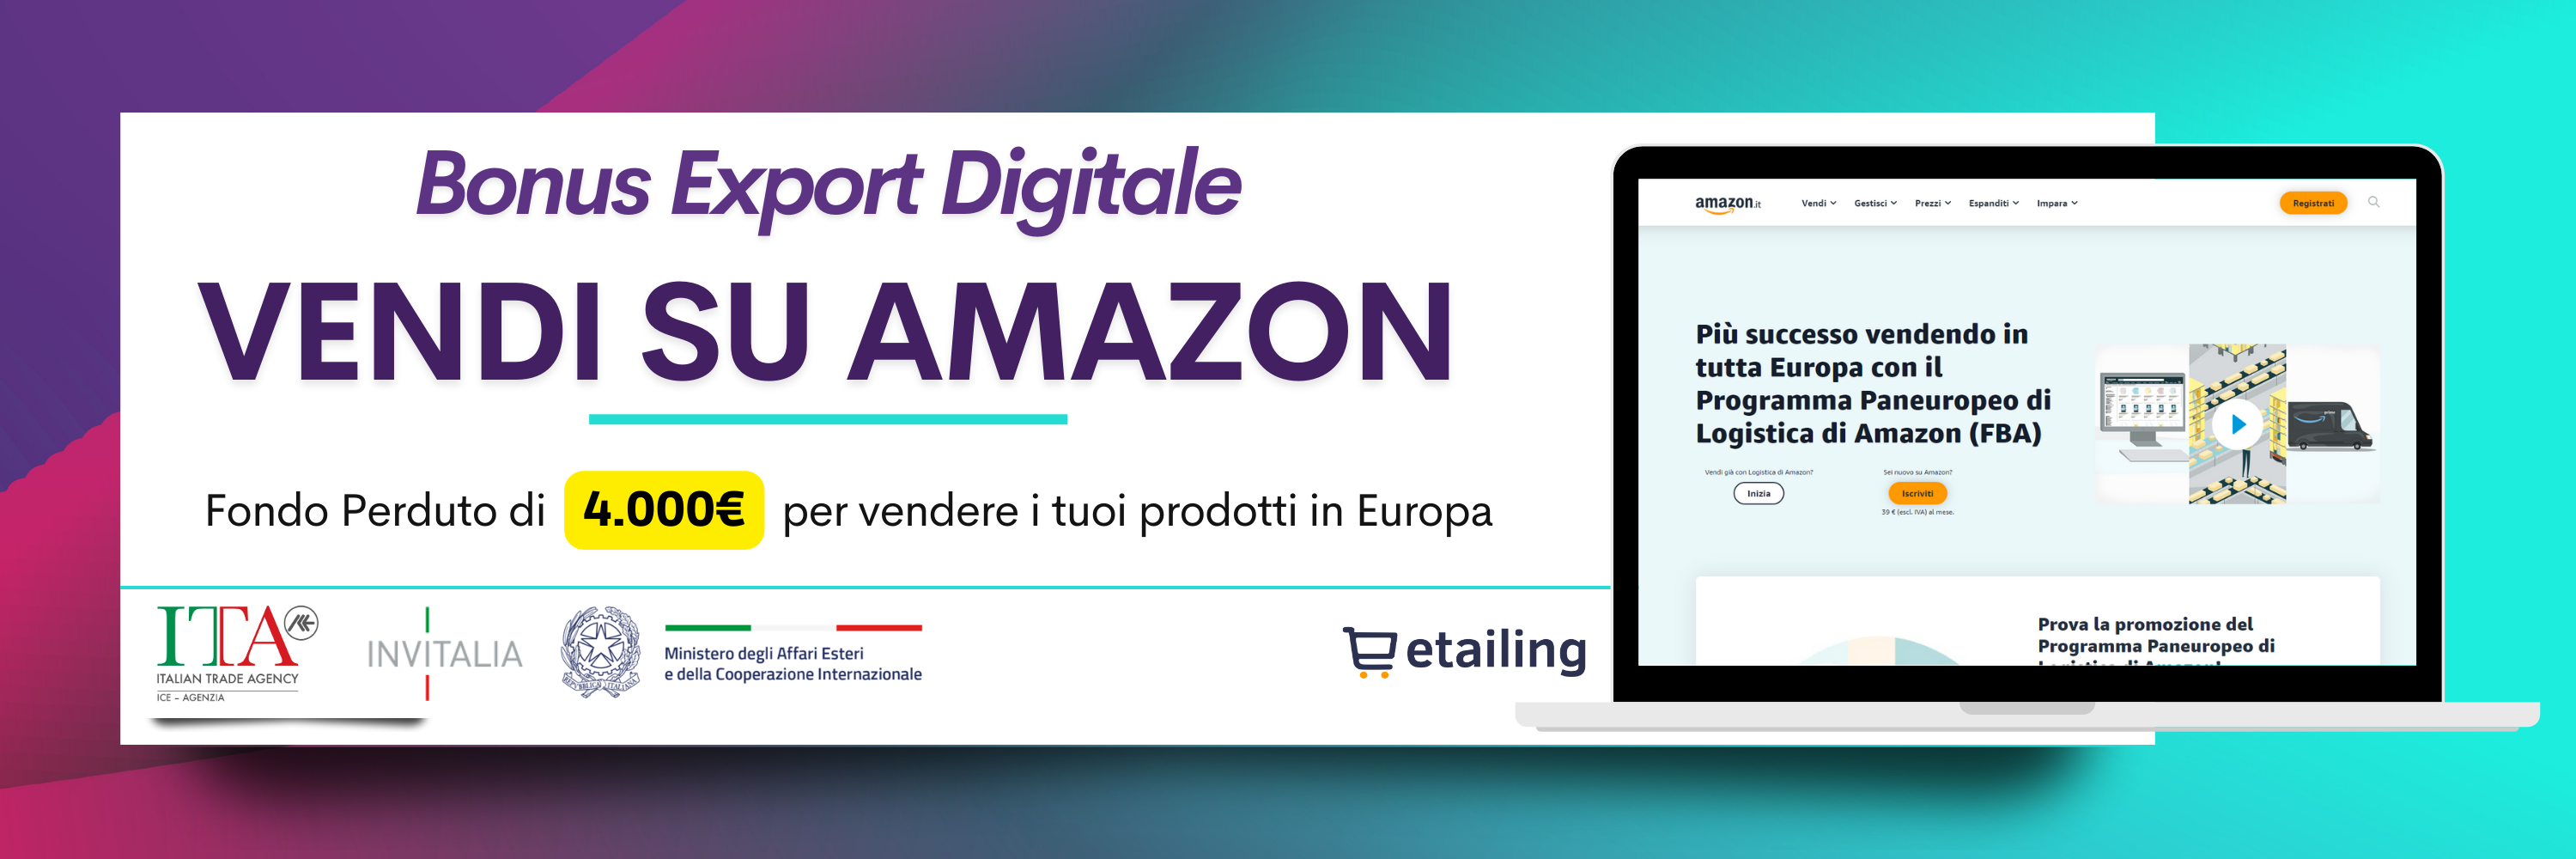 Bonus Export Digitale | Vendi in Amazon Europa con Etailing